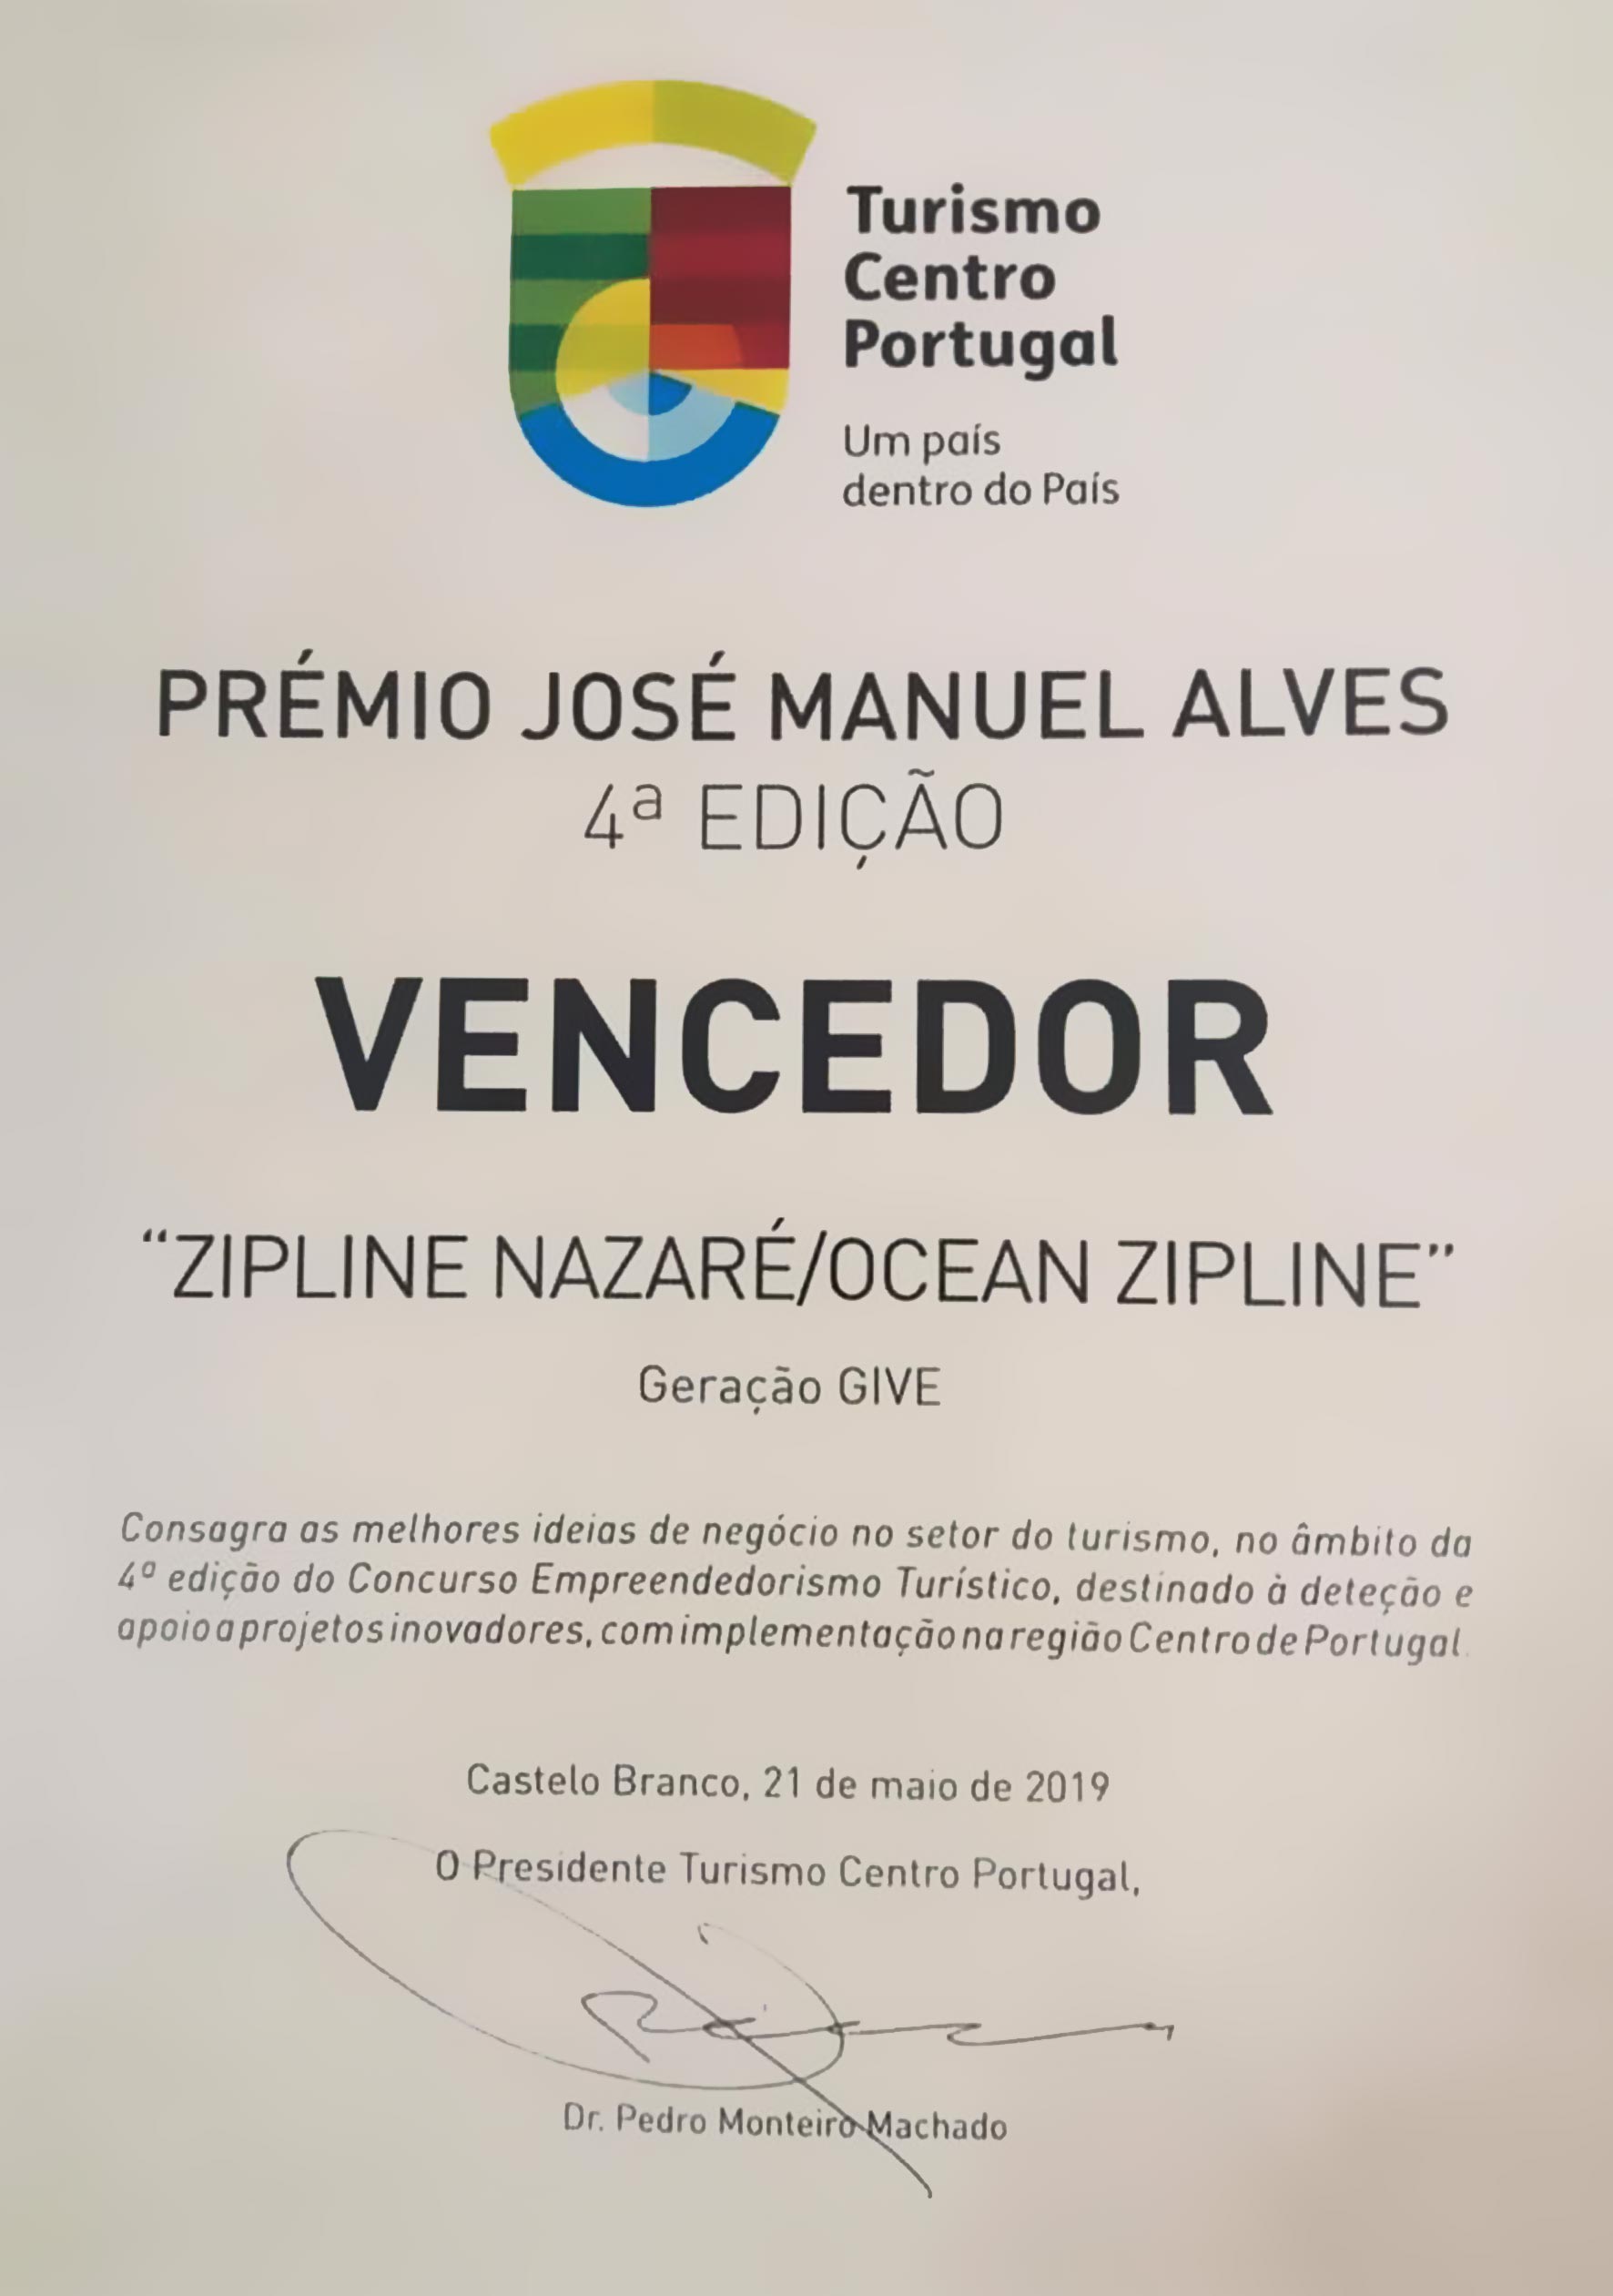 Prémio José Manuel Alves 2019